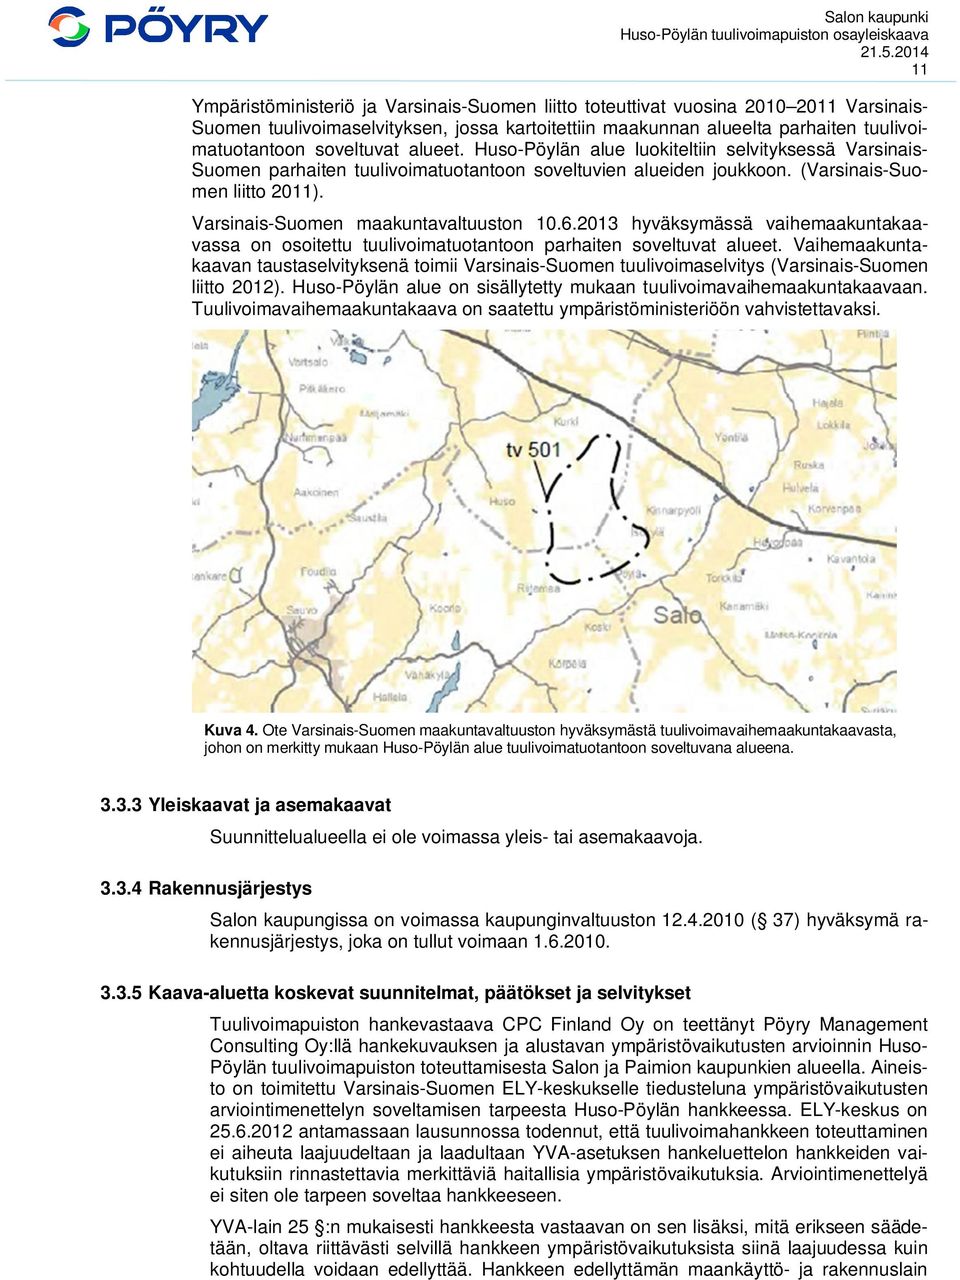 Varsinais-Suomen maakuntavaltuuston 10.6.2013 hyväksymässä vaihemaakuntakaavassa on osoitettu tuulivoimatuotantoon parhaiten soveltuvat alueet.